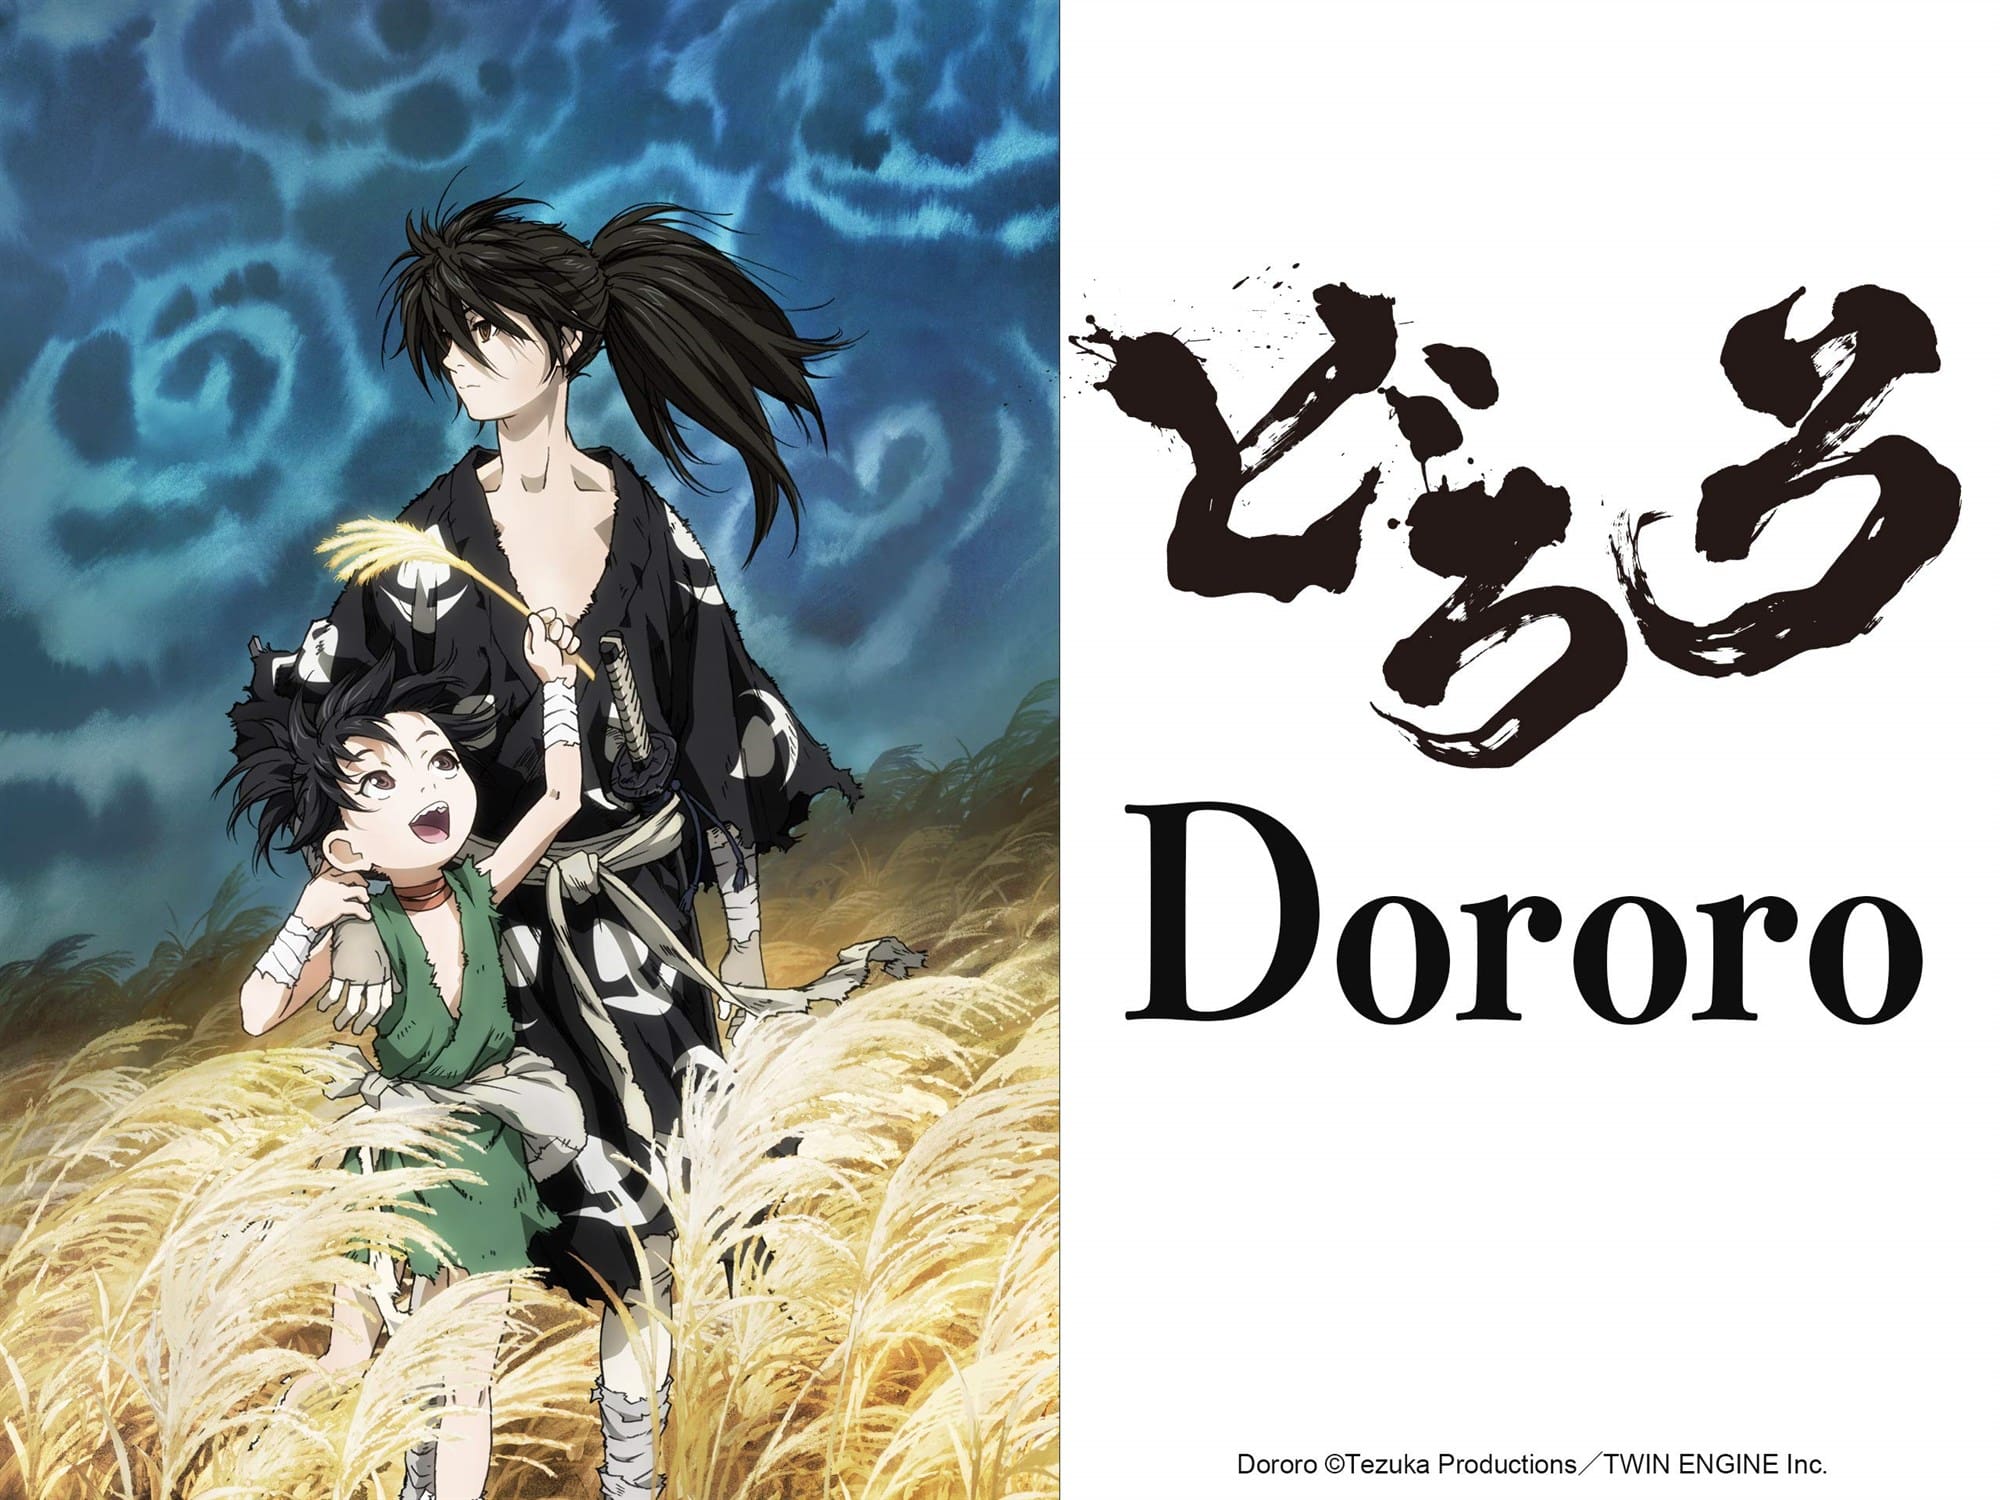 Anime Review: Dororo